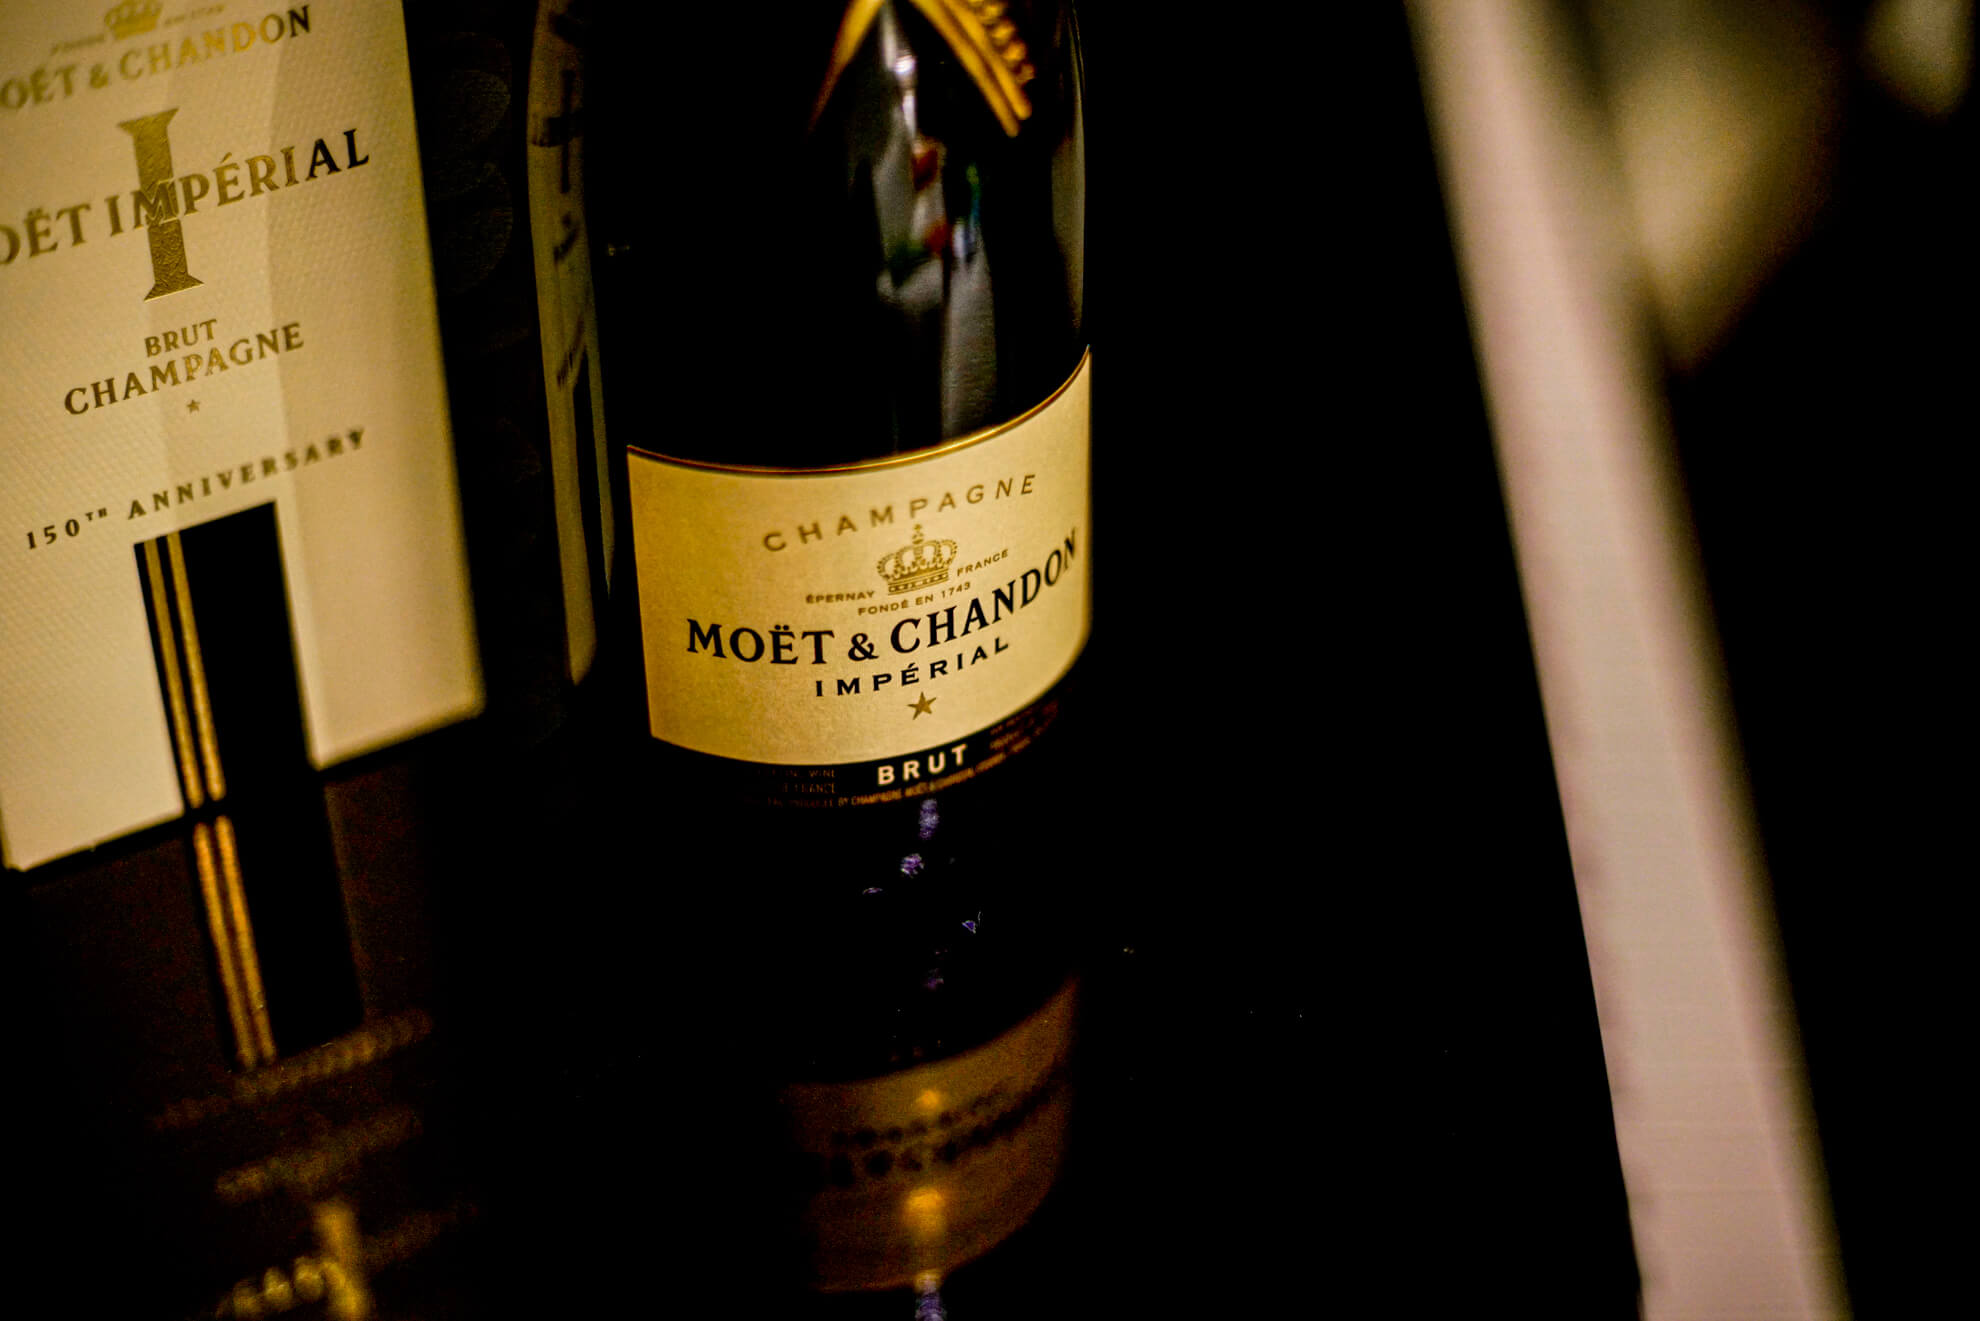 Moët & Chandon, Champagne, Imperial Brut